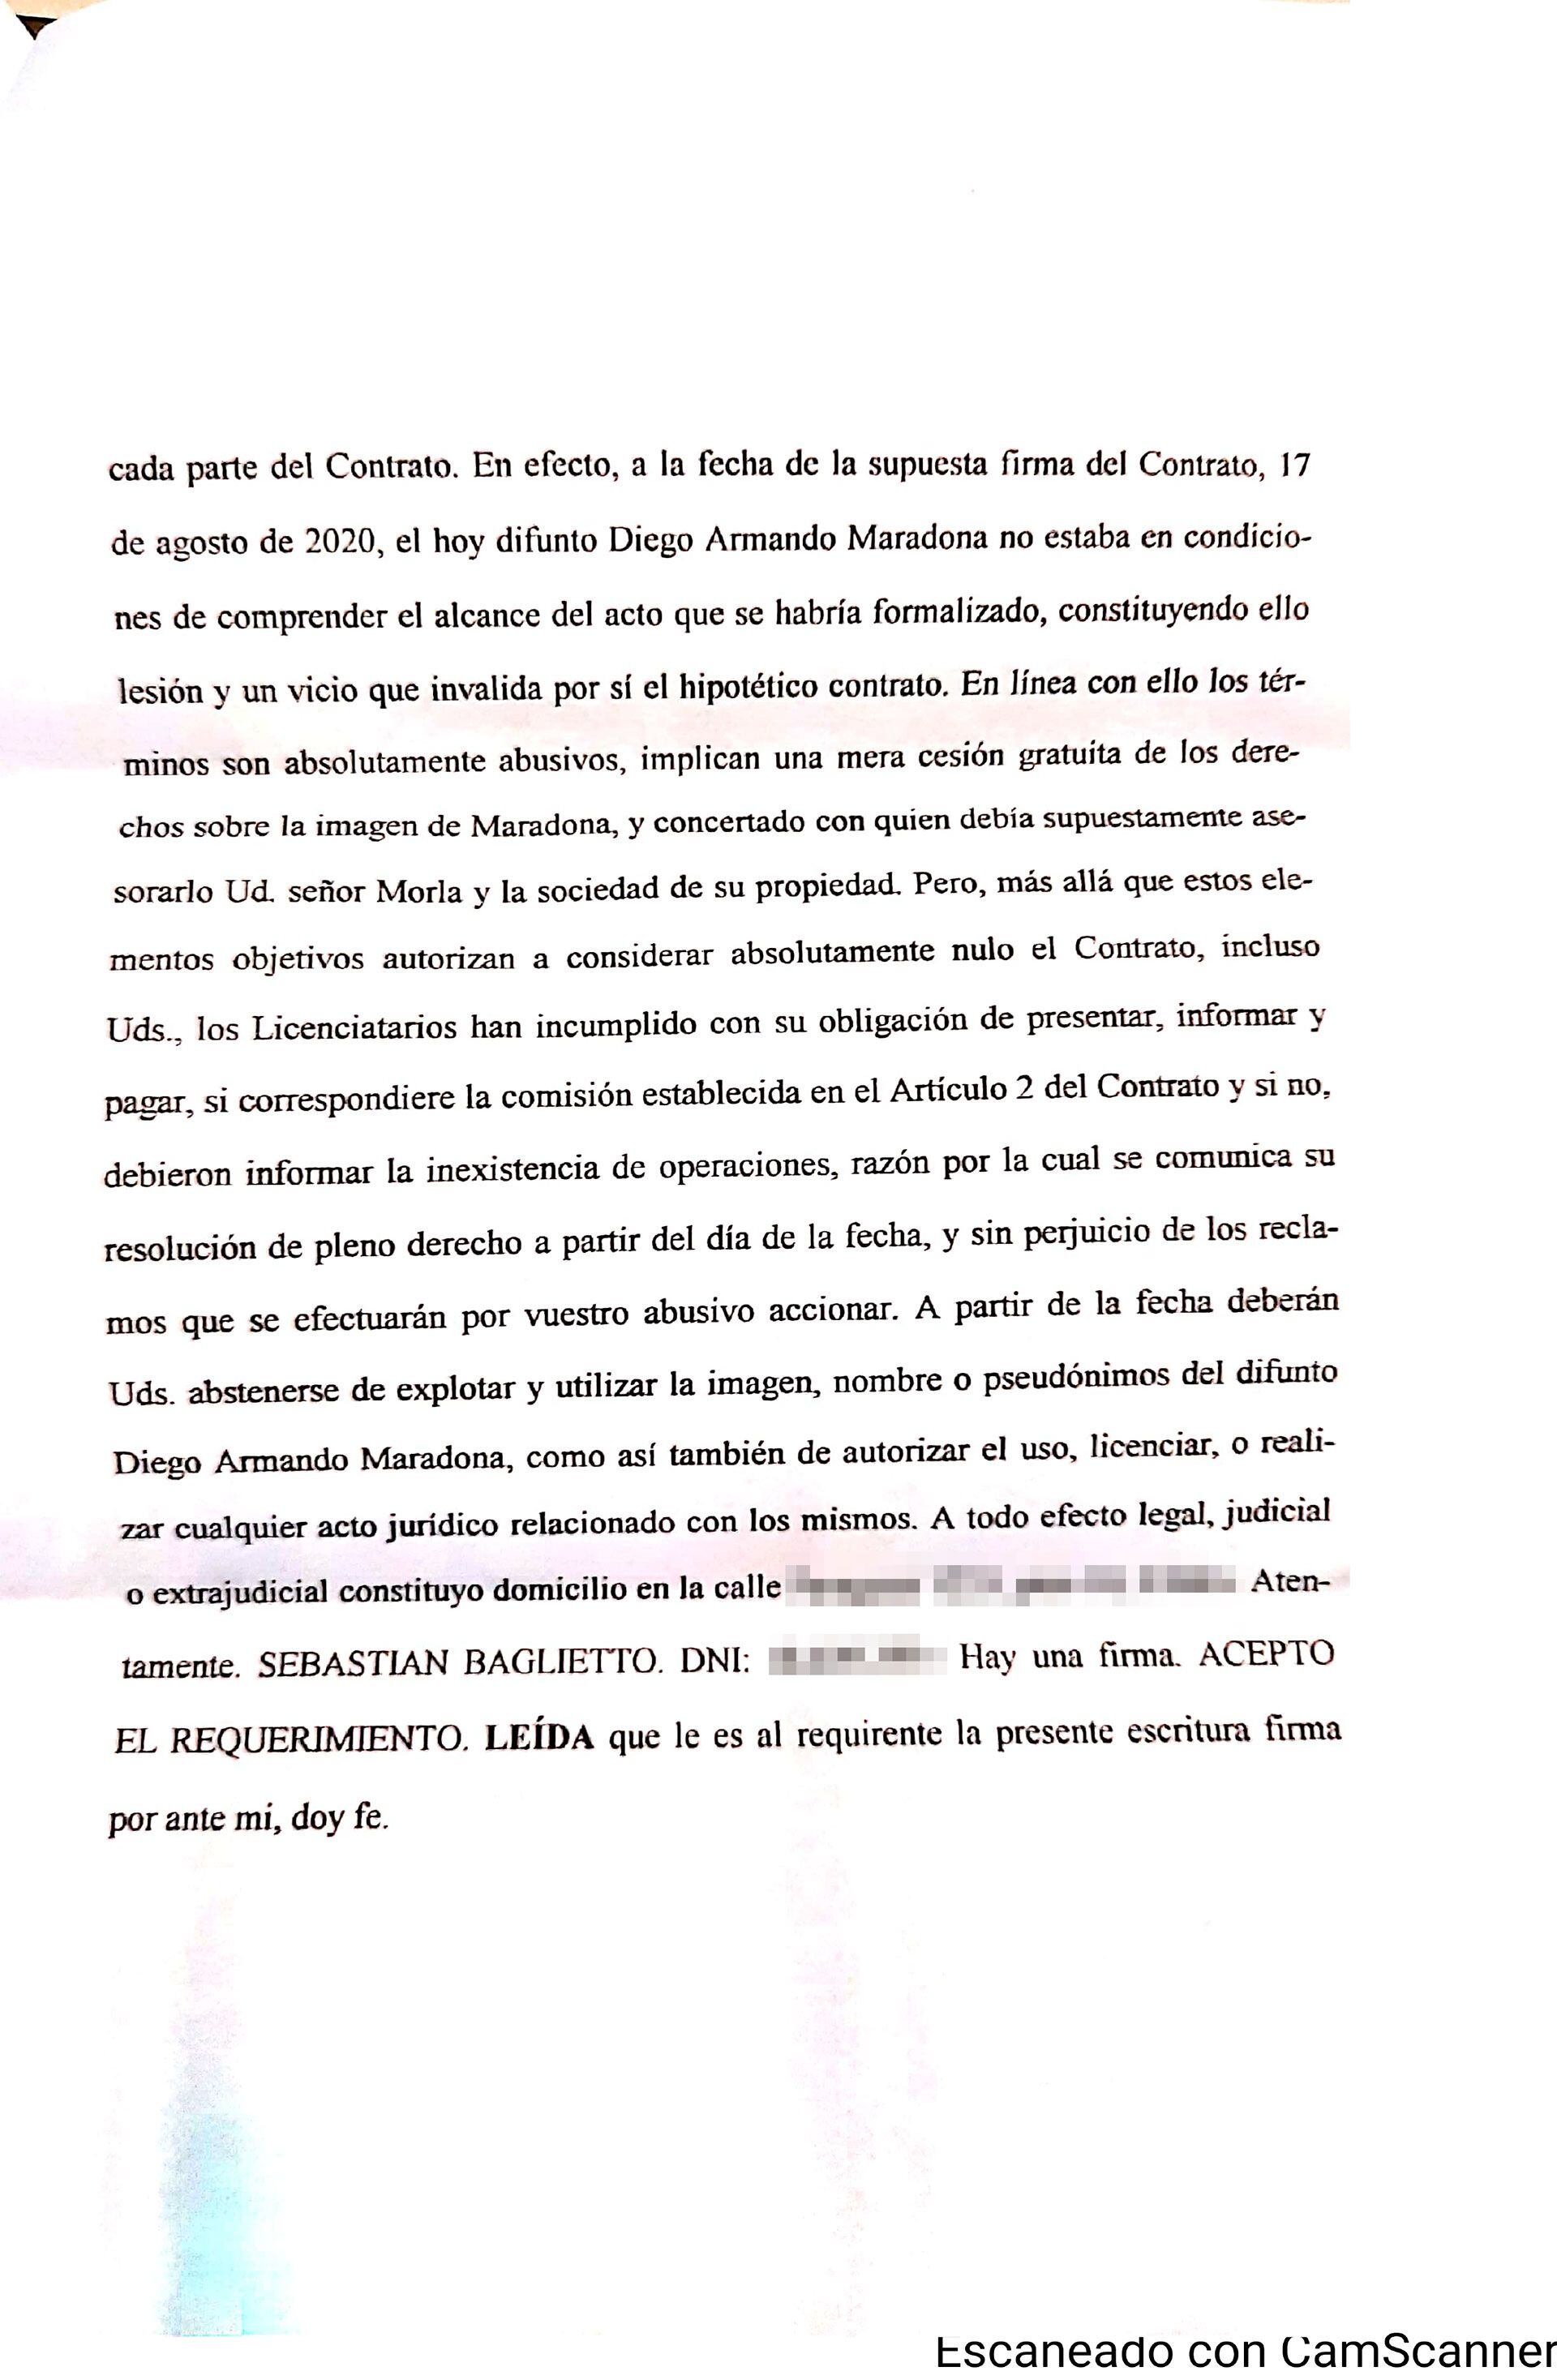 acta notarial de rescisión de derechos que tenía el empresario Stefano Ceci